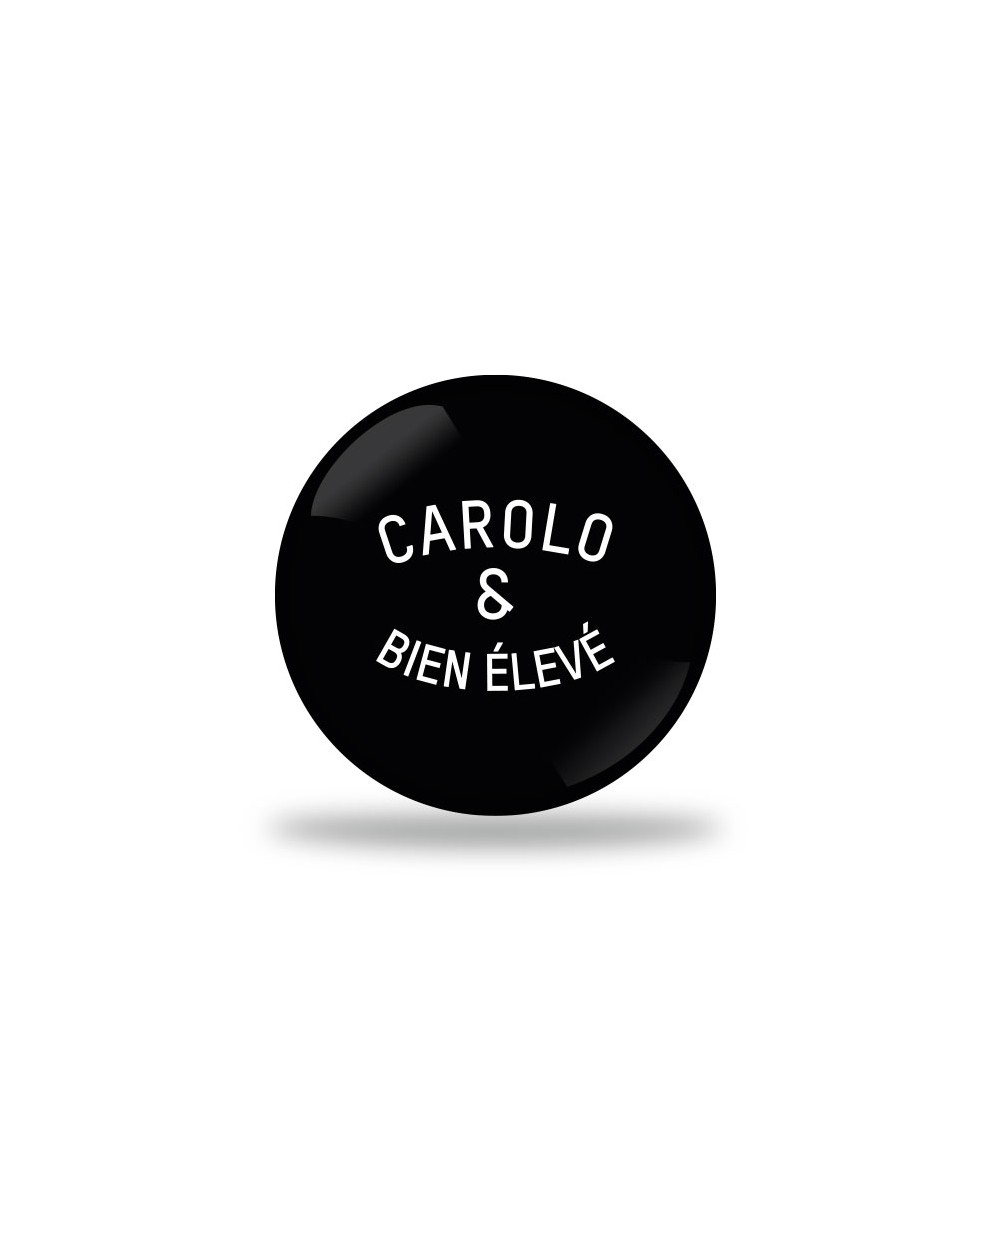 Carolo et bien éleve Badge